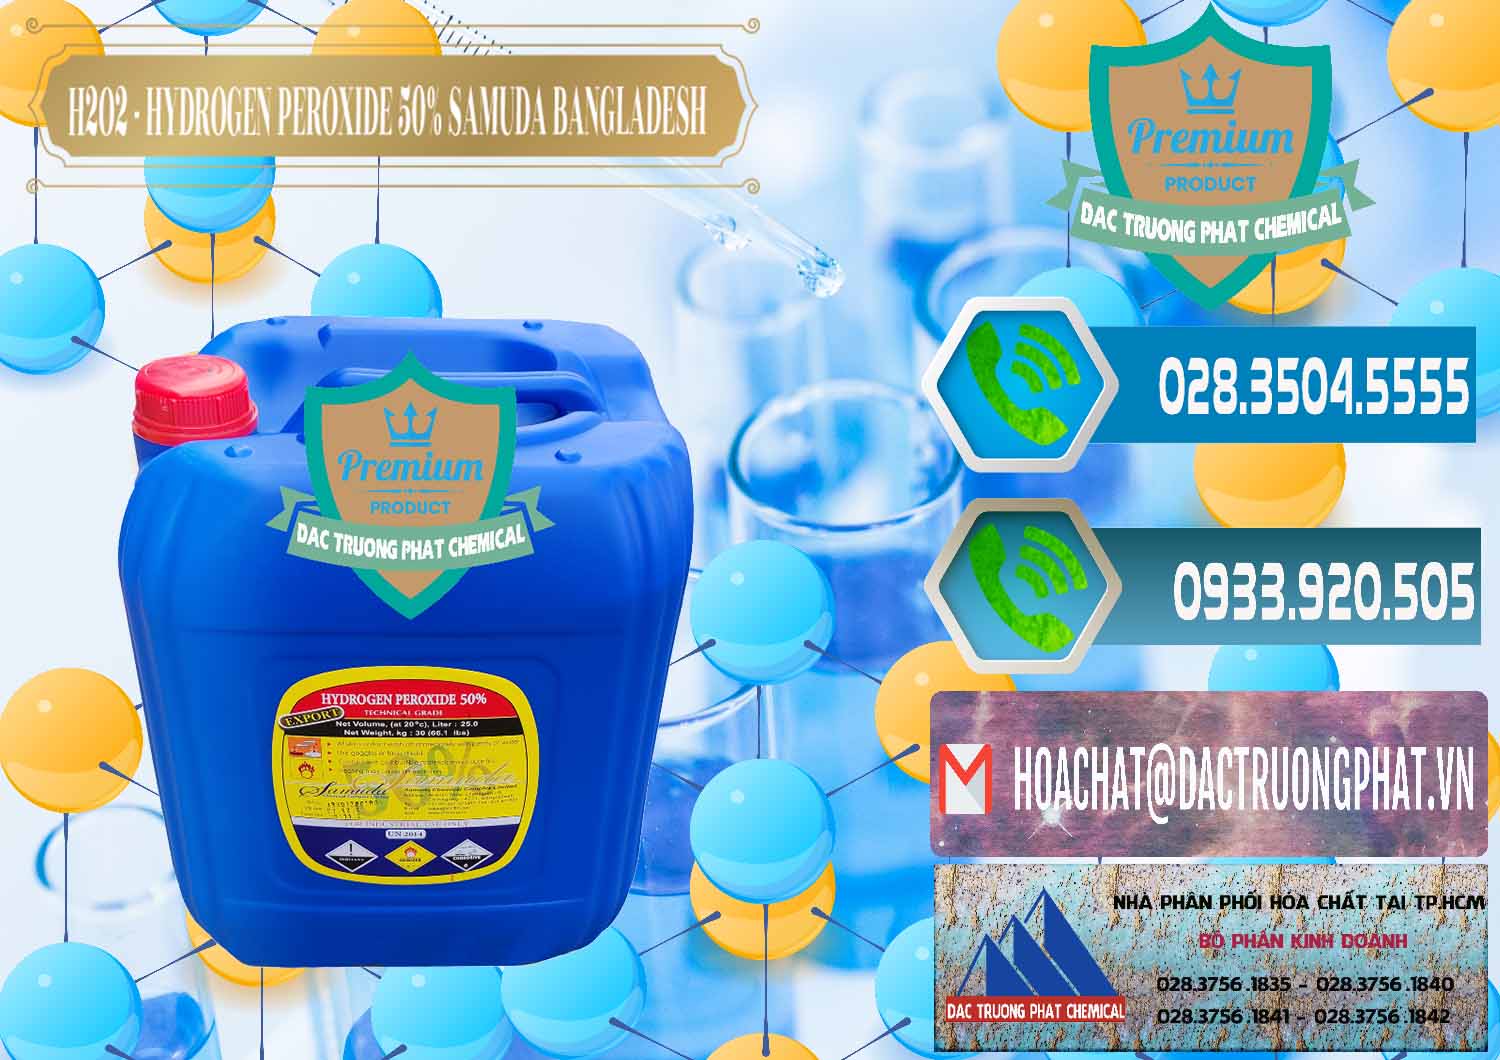 Nhà nhập khẩu - bán H2O2 - Hydrogen Peroxide 50% Samuda Bangladesh - 0077 - Nơi chuyên nhập khẩu - cung cấp hóa chất tại TP.HCM - congtyhoachat.net